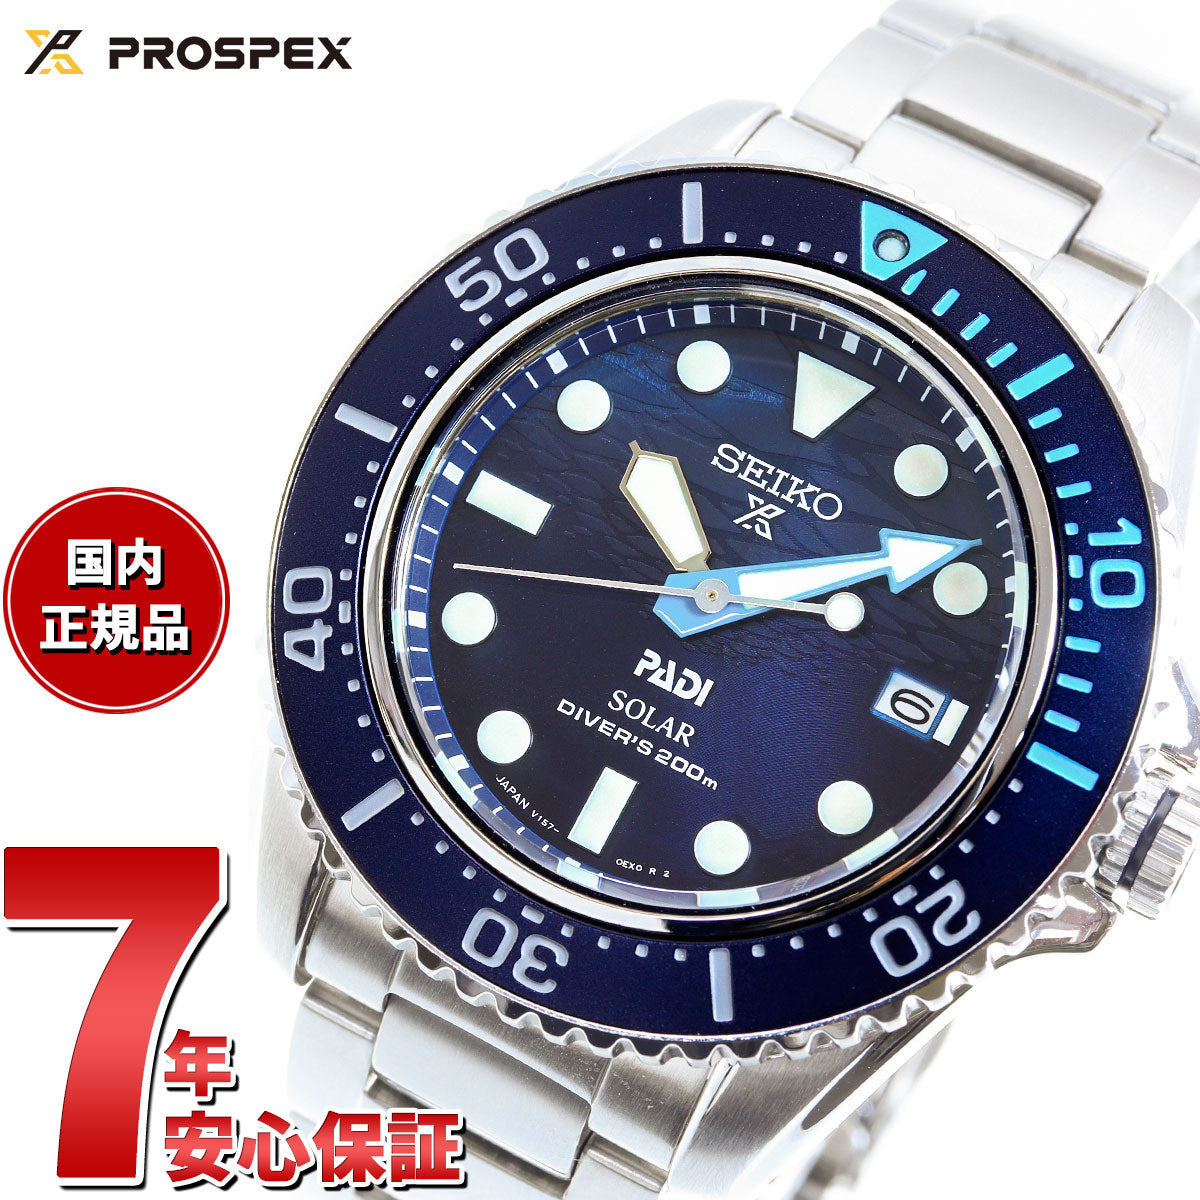 AKOSEIKO/セイコー パディ ソーラー ダイバーズ プロスペックス メンズ腕時計